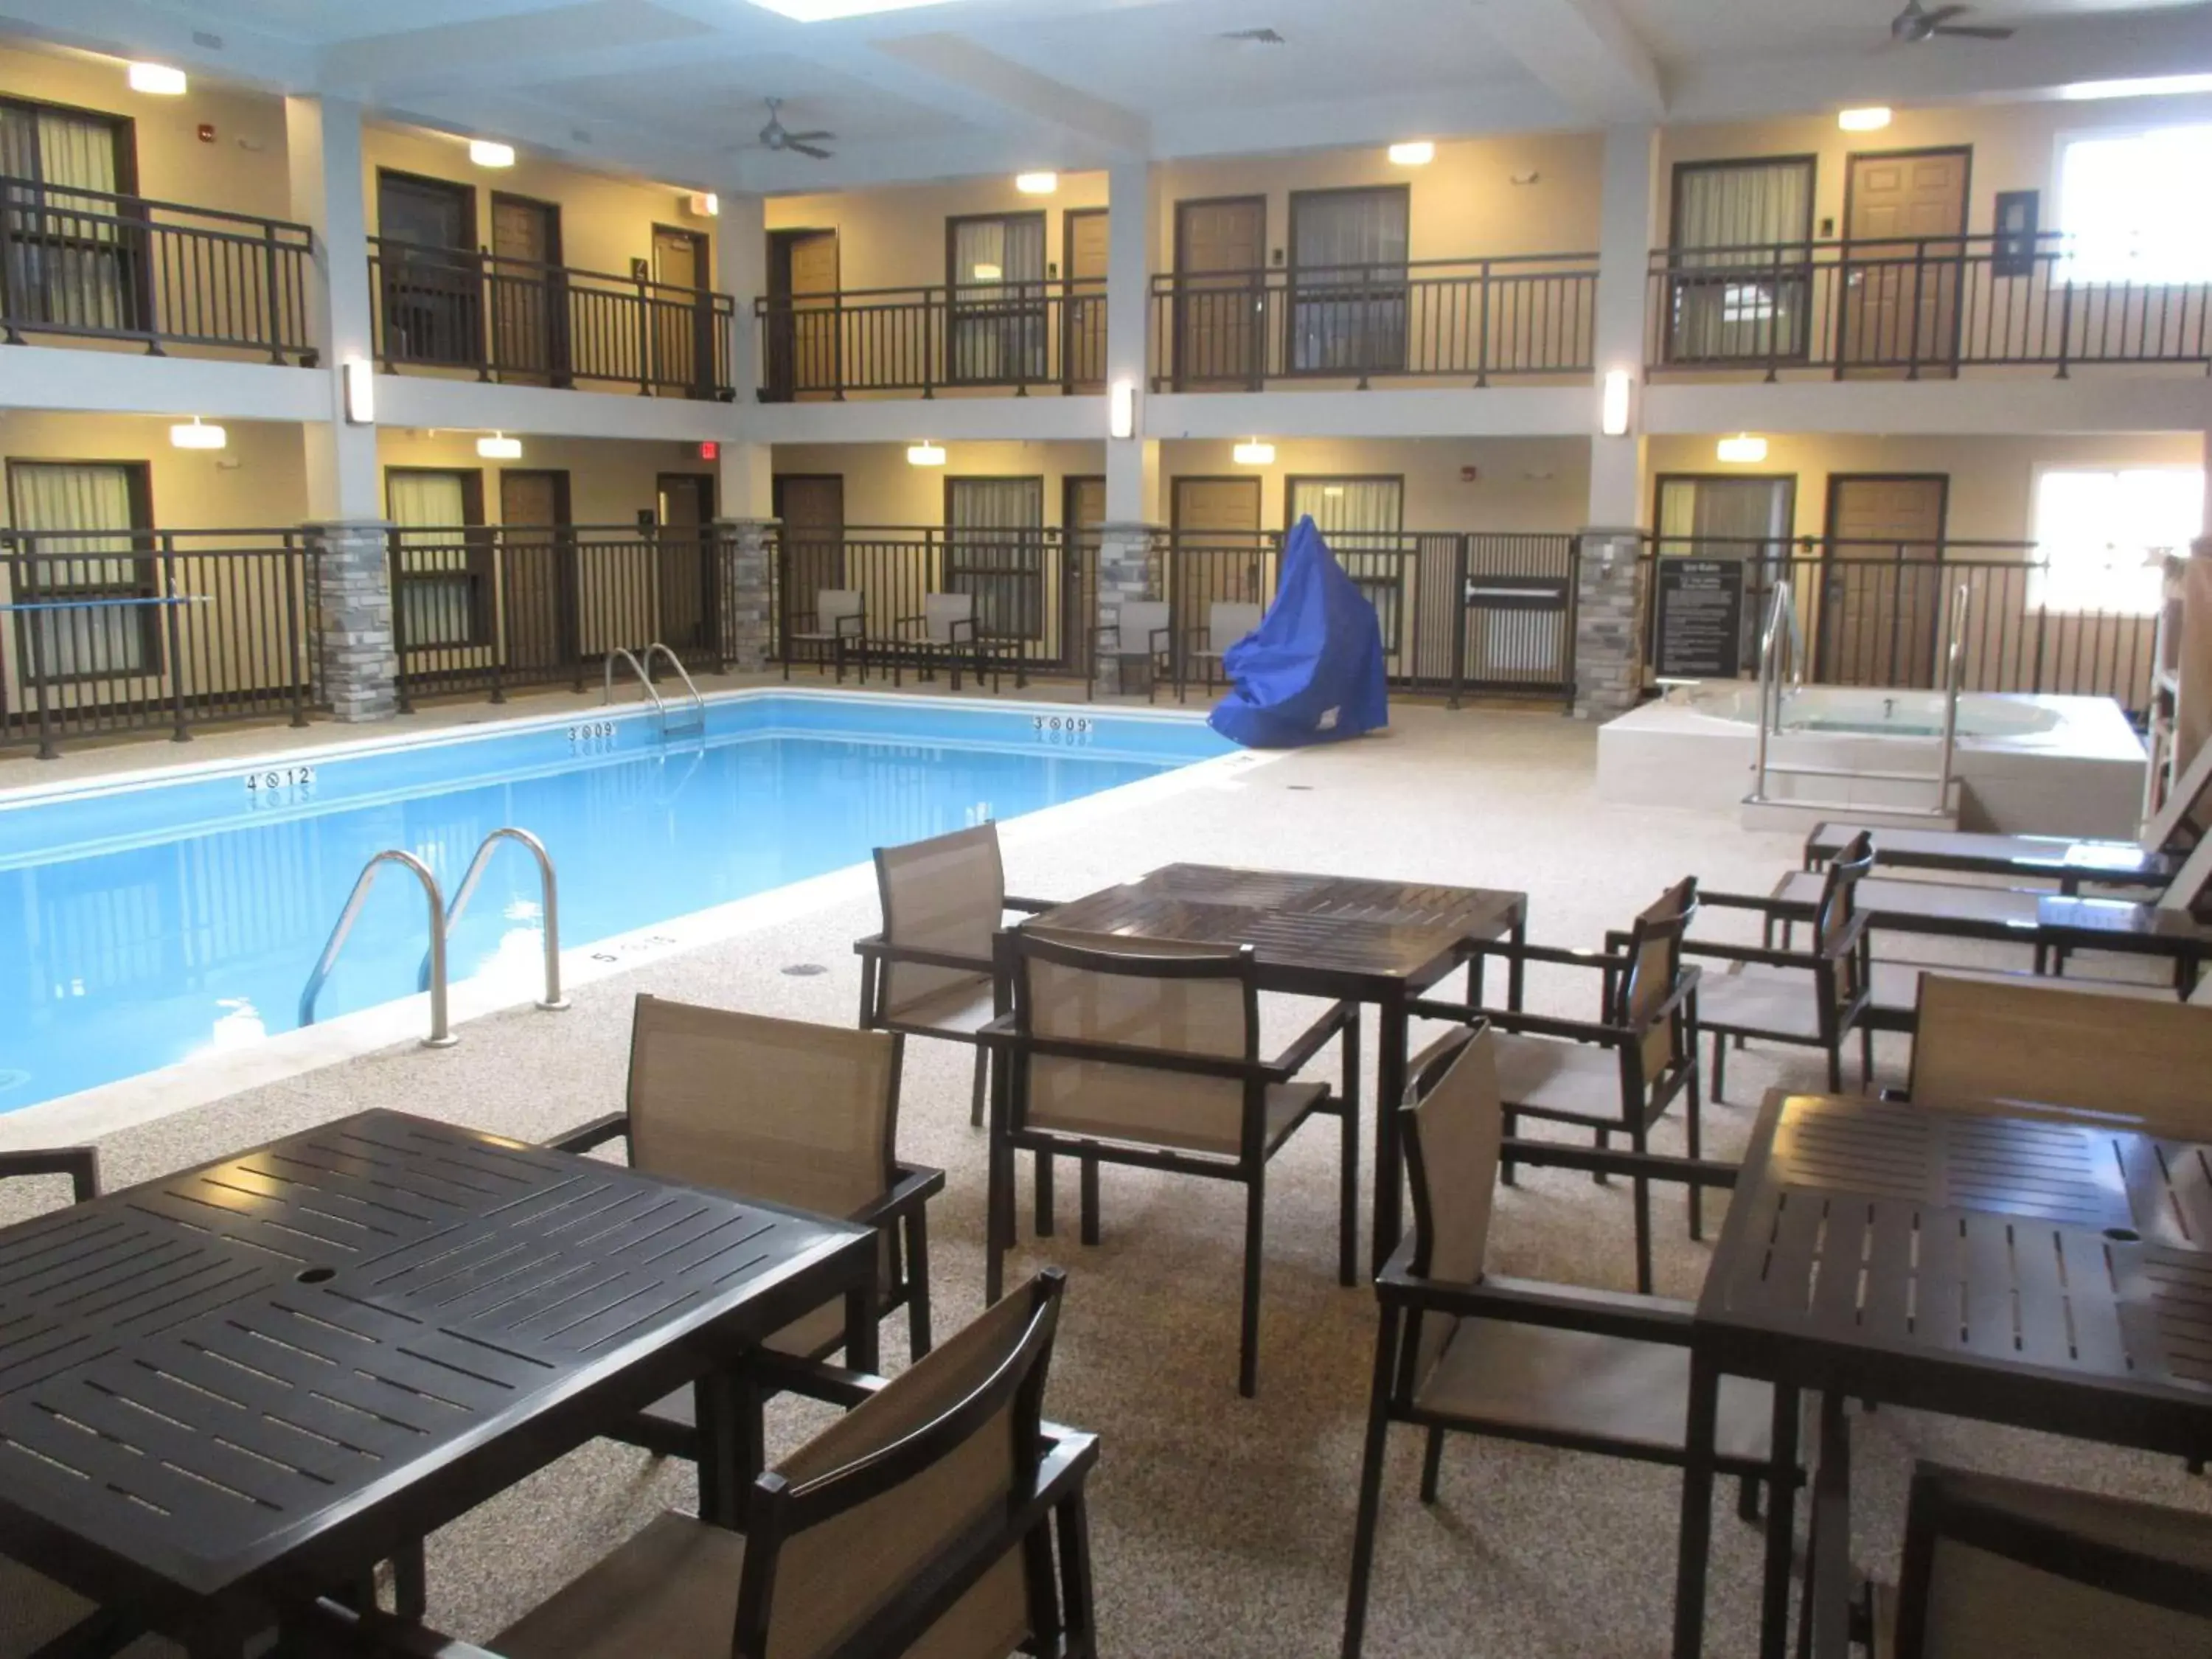 On site, Swimming Pool in Best Western Harvest Inn & Suites